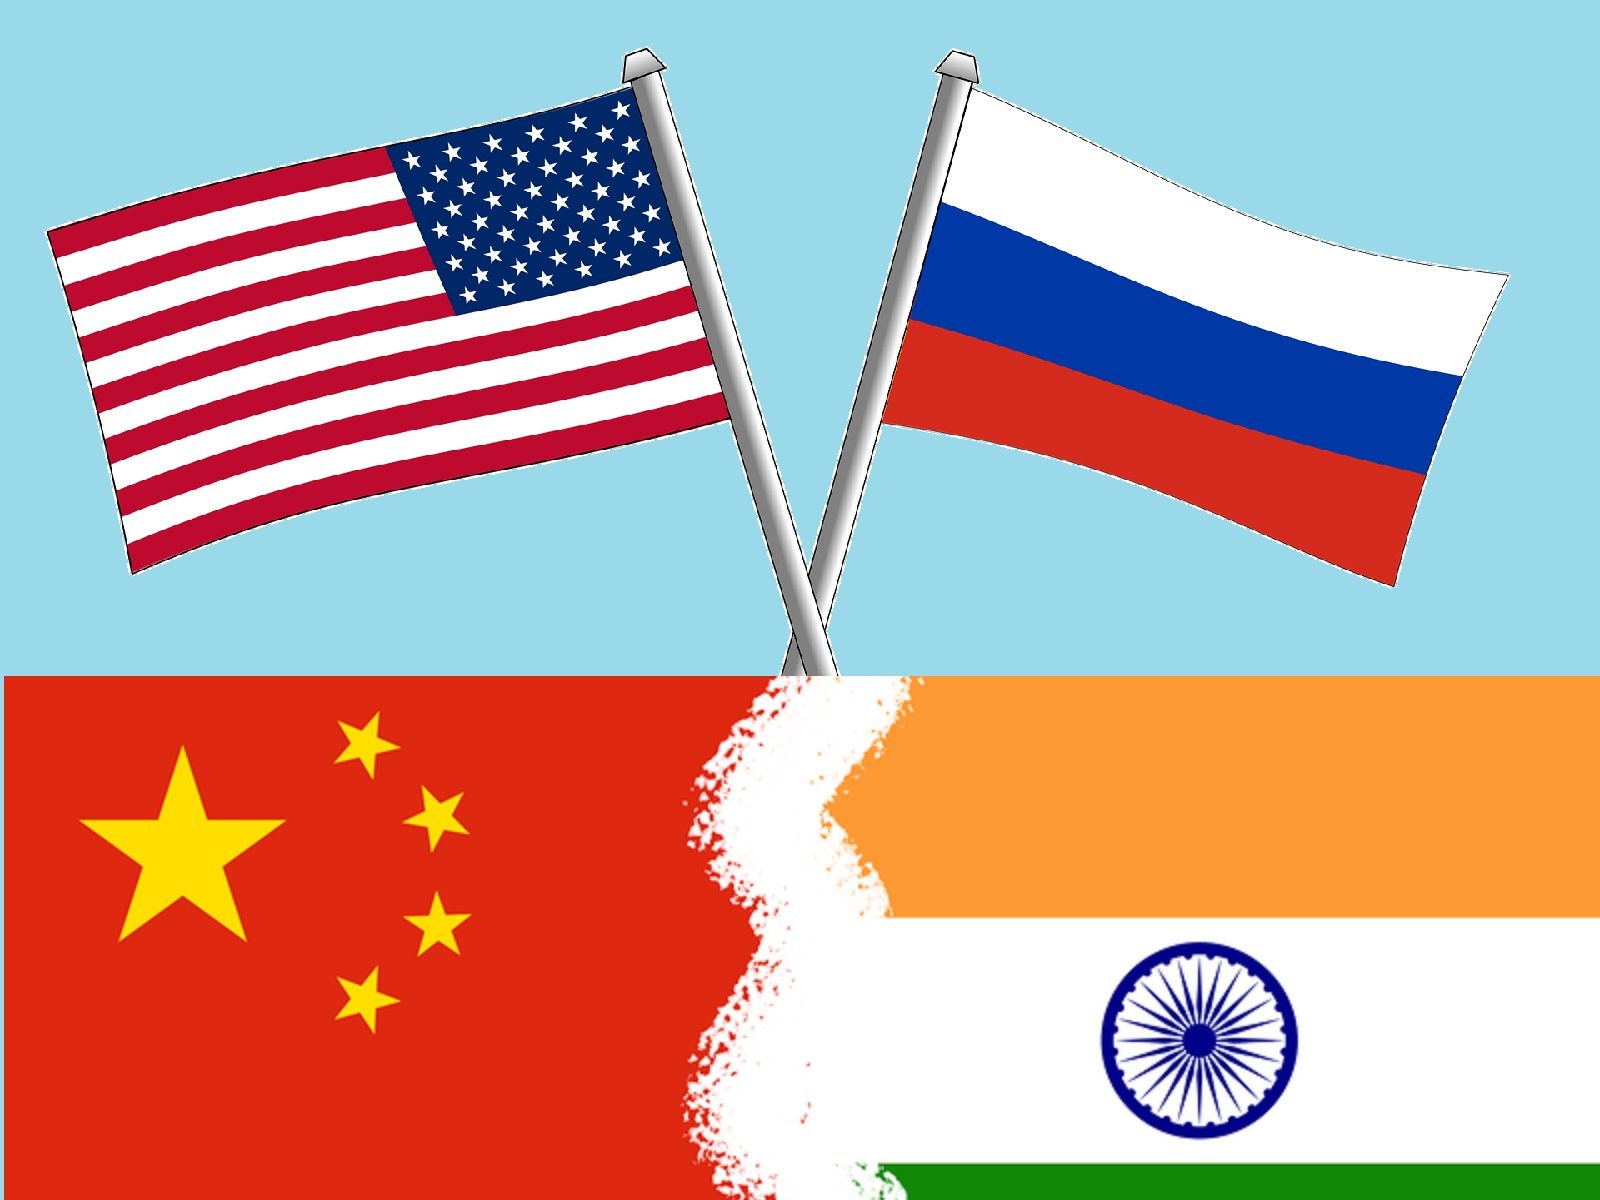 चीन के बहाने भारत को घेरने की कोशिश कर रहा है अमेरिका - russia ukraine war us trying to rope in india on the pretext of china viks – News18 हिंदी